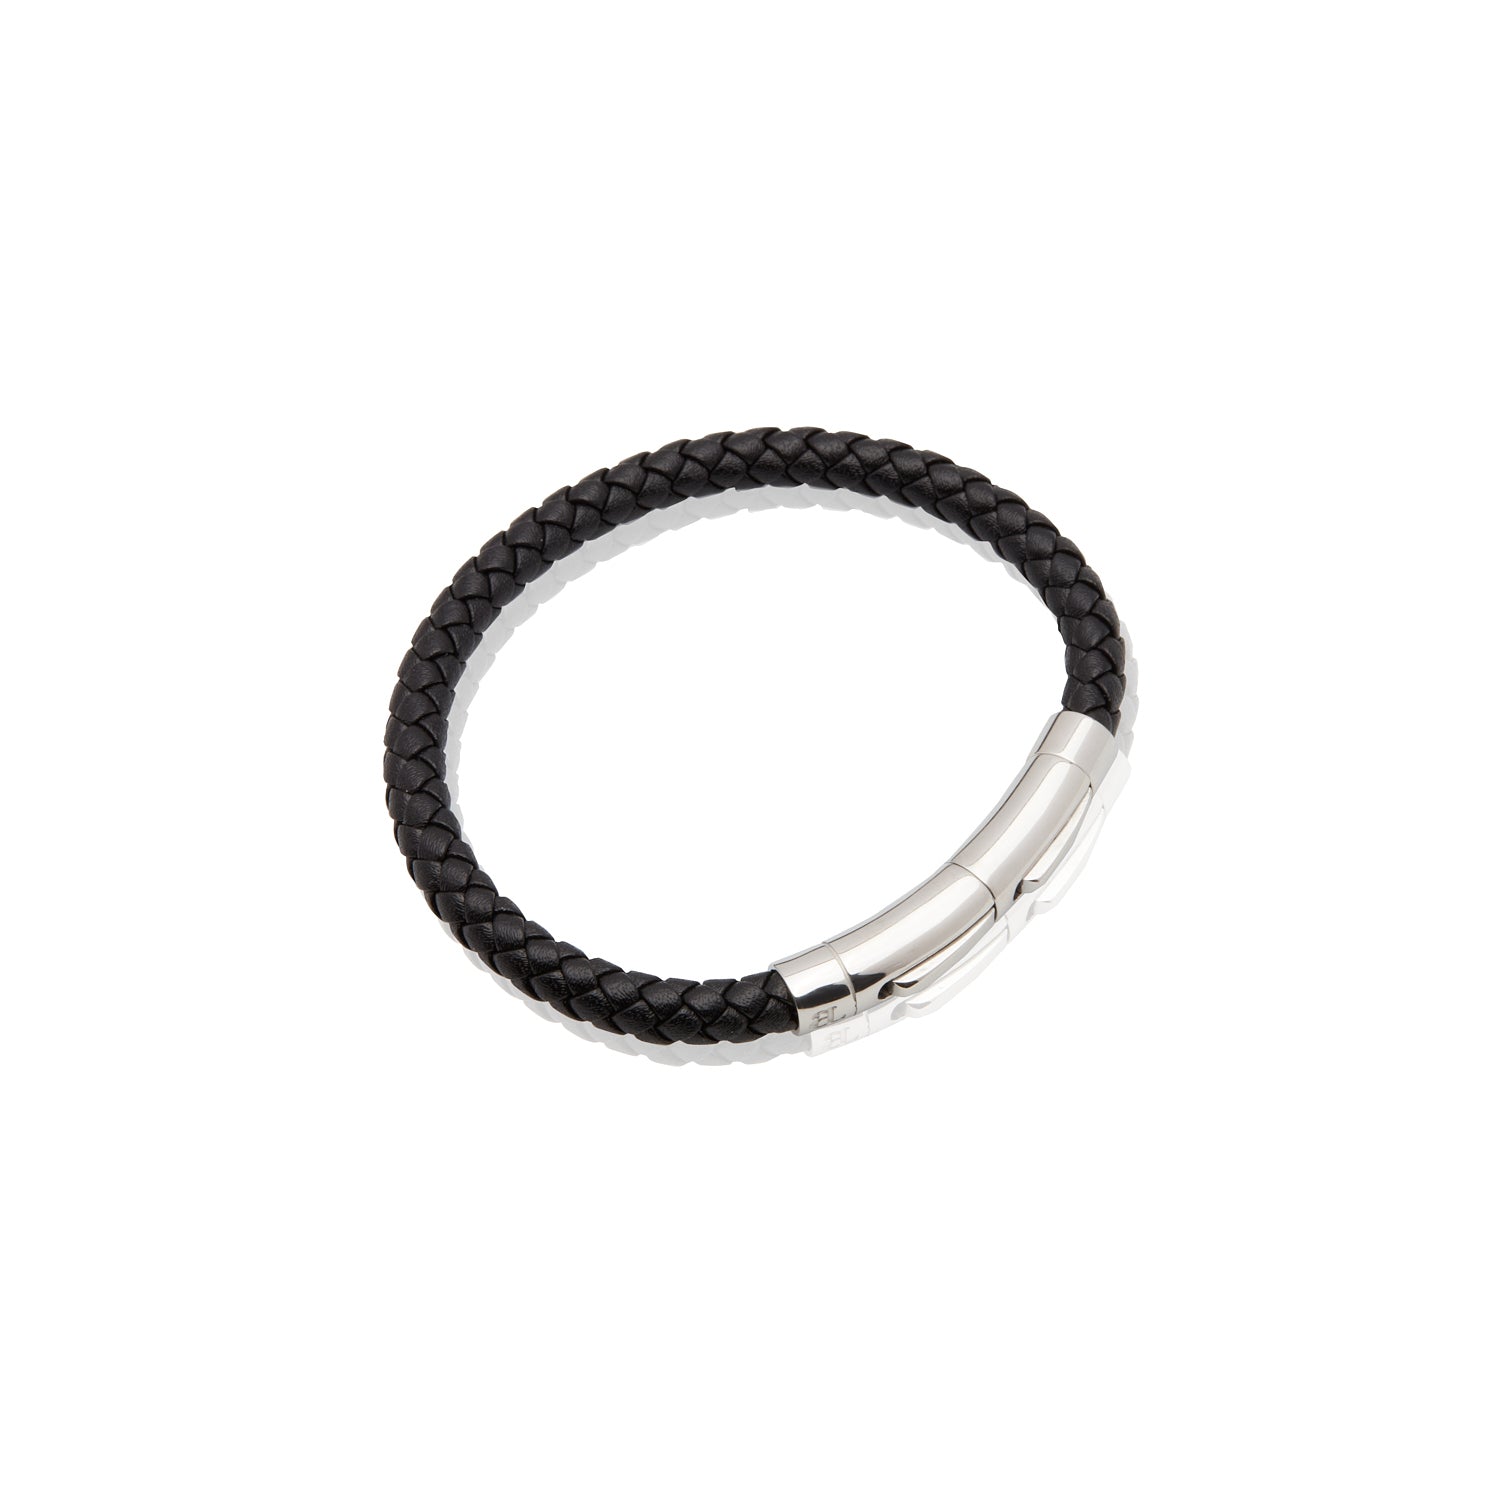 Mens Black Leather Bracelet - Silver - Large (22cm)